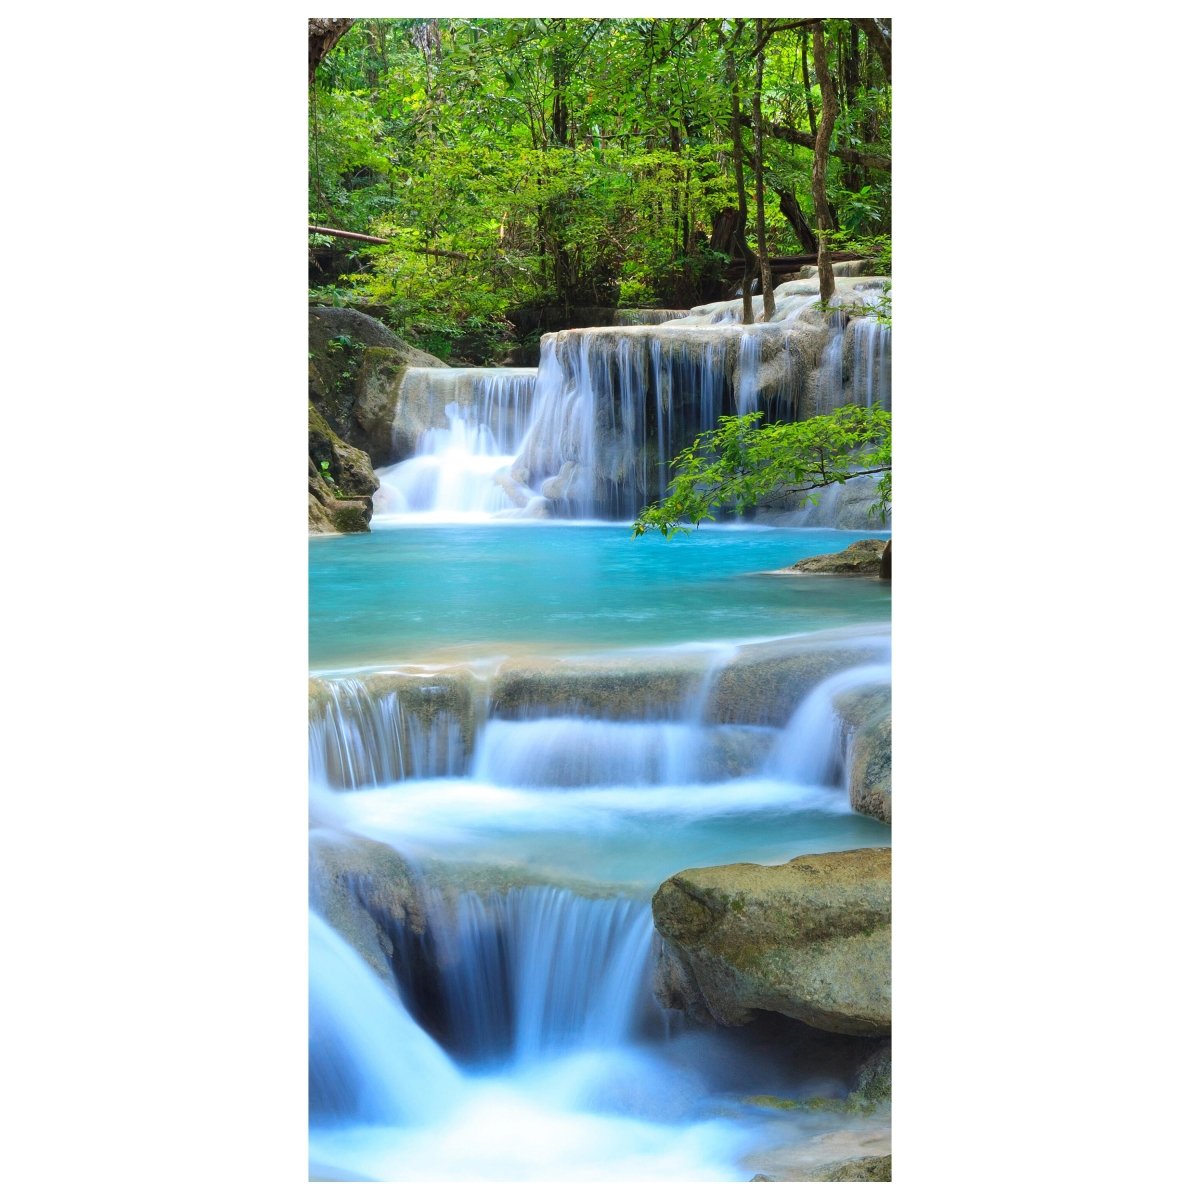 Türtapete Wasserfall im Wald M0485 - Bild 2